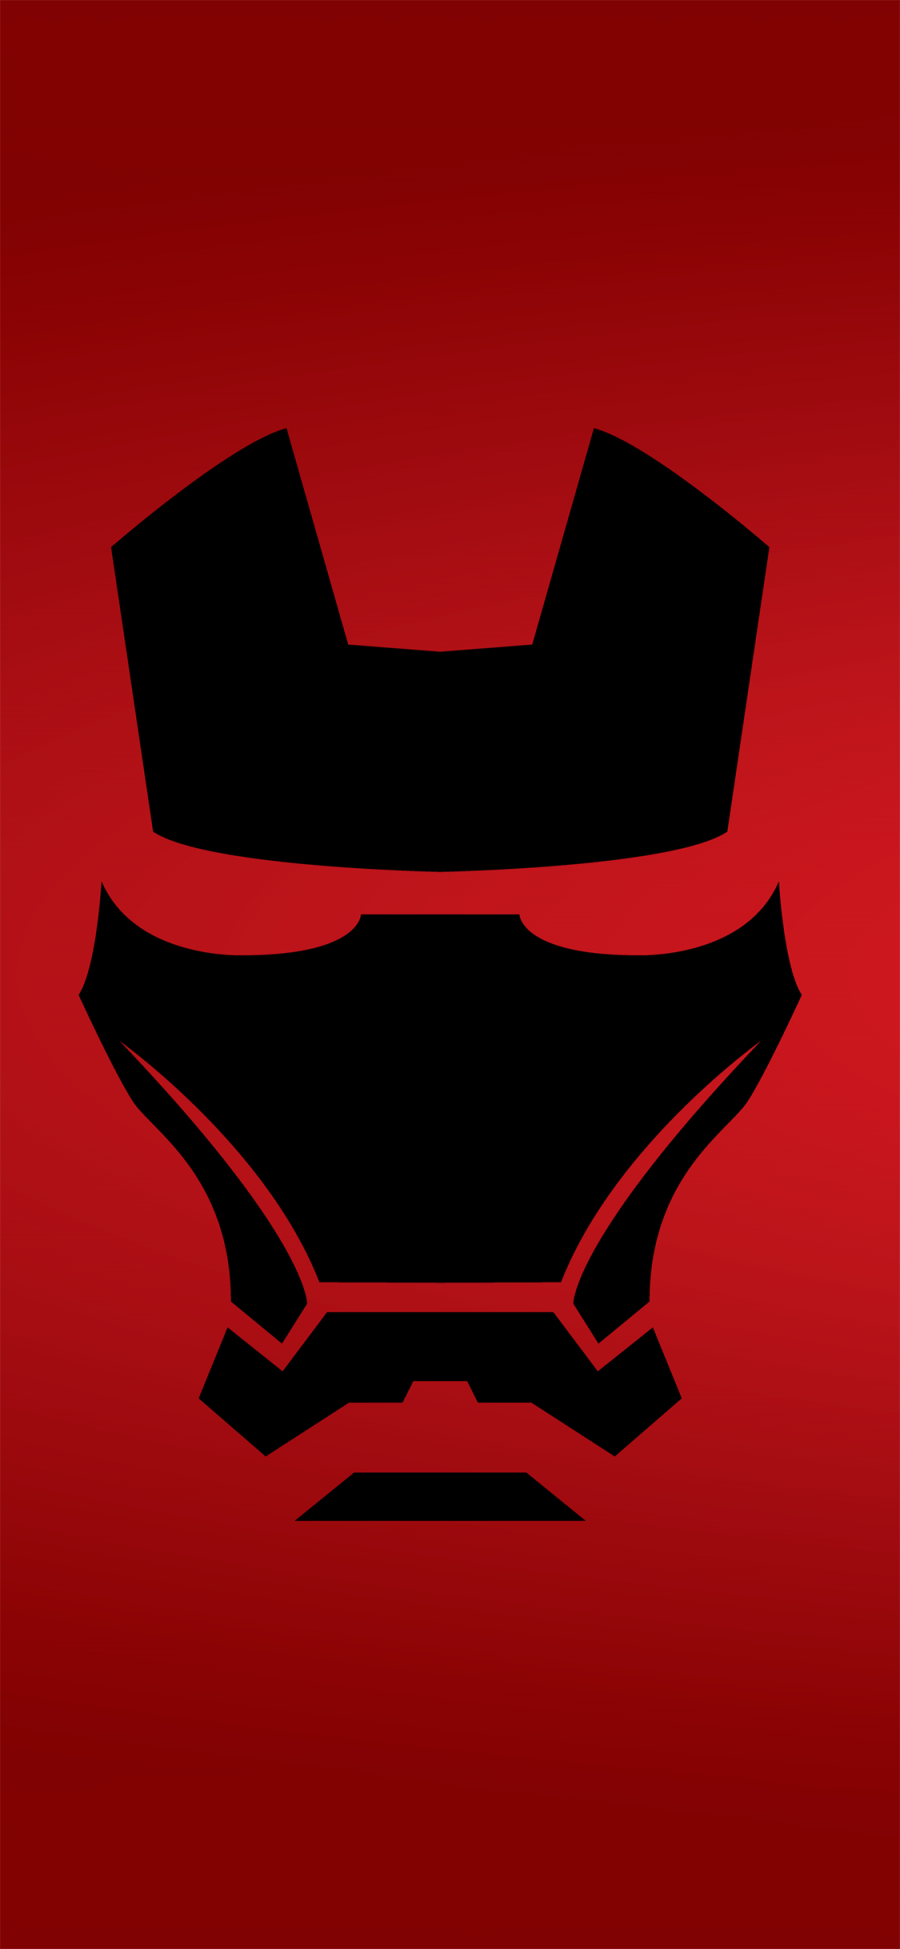 [2436×1125]钢铁侠 面具 红黑 欧美 平面 超级英雄 苹果手机动漫壁纸图片